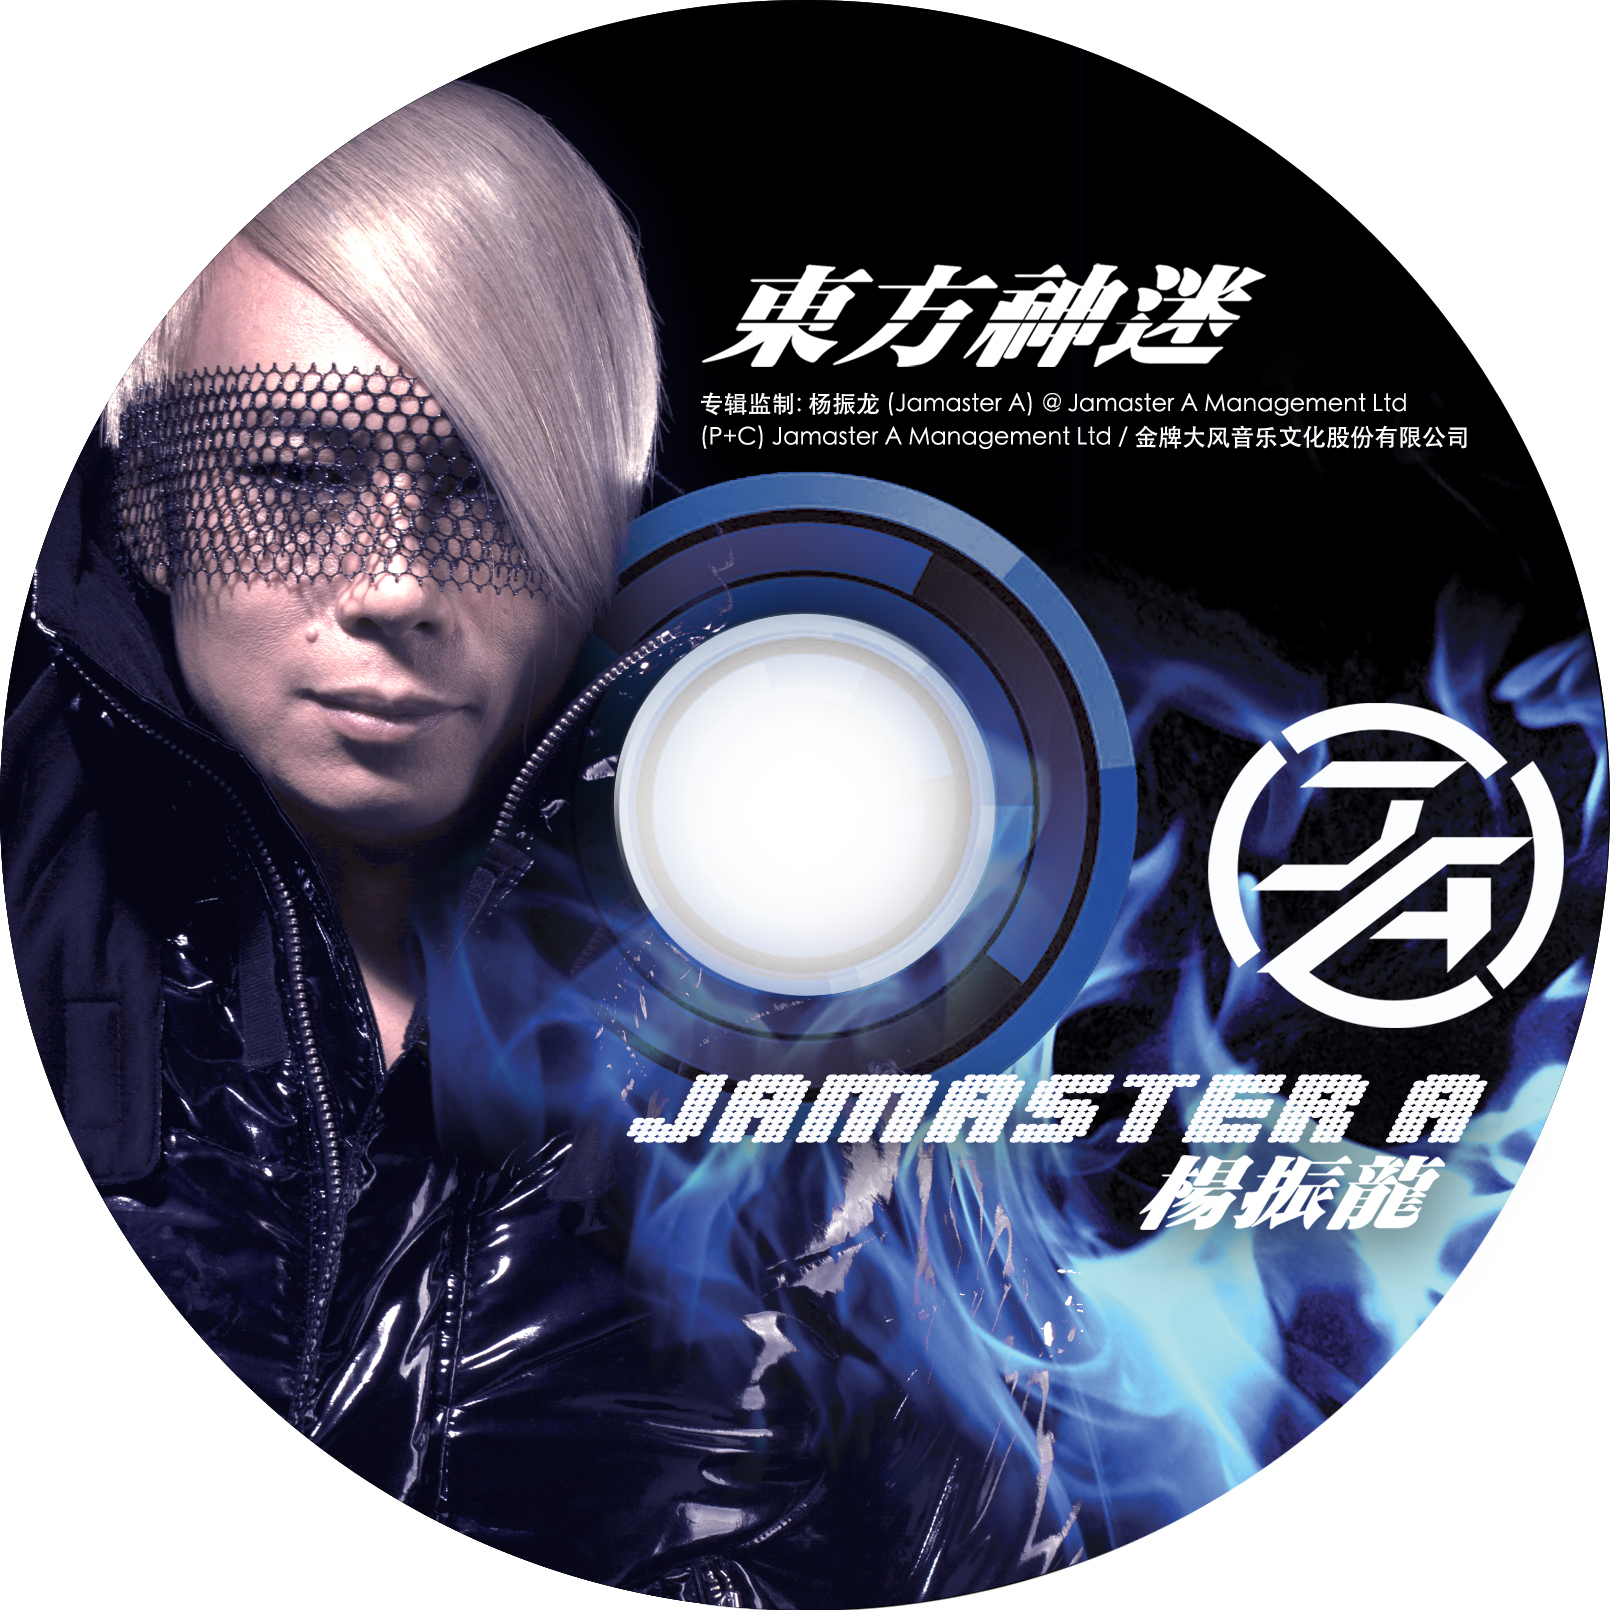 Jamaster A ft. zhu jing  hong lou meng